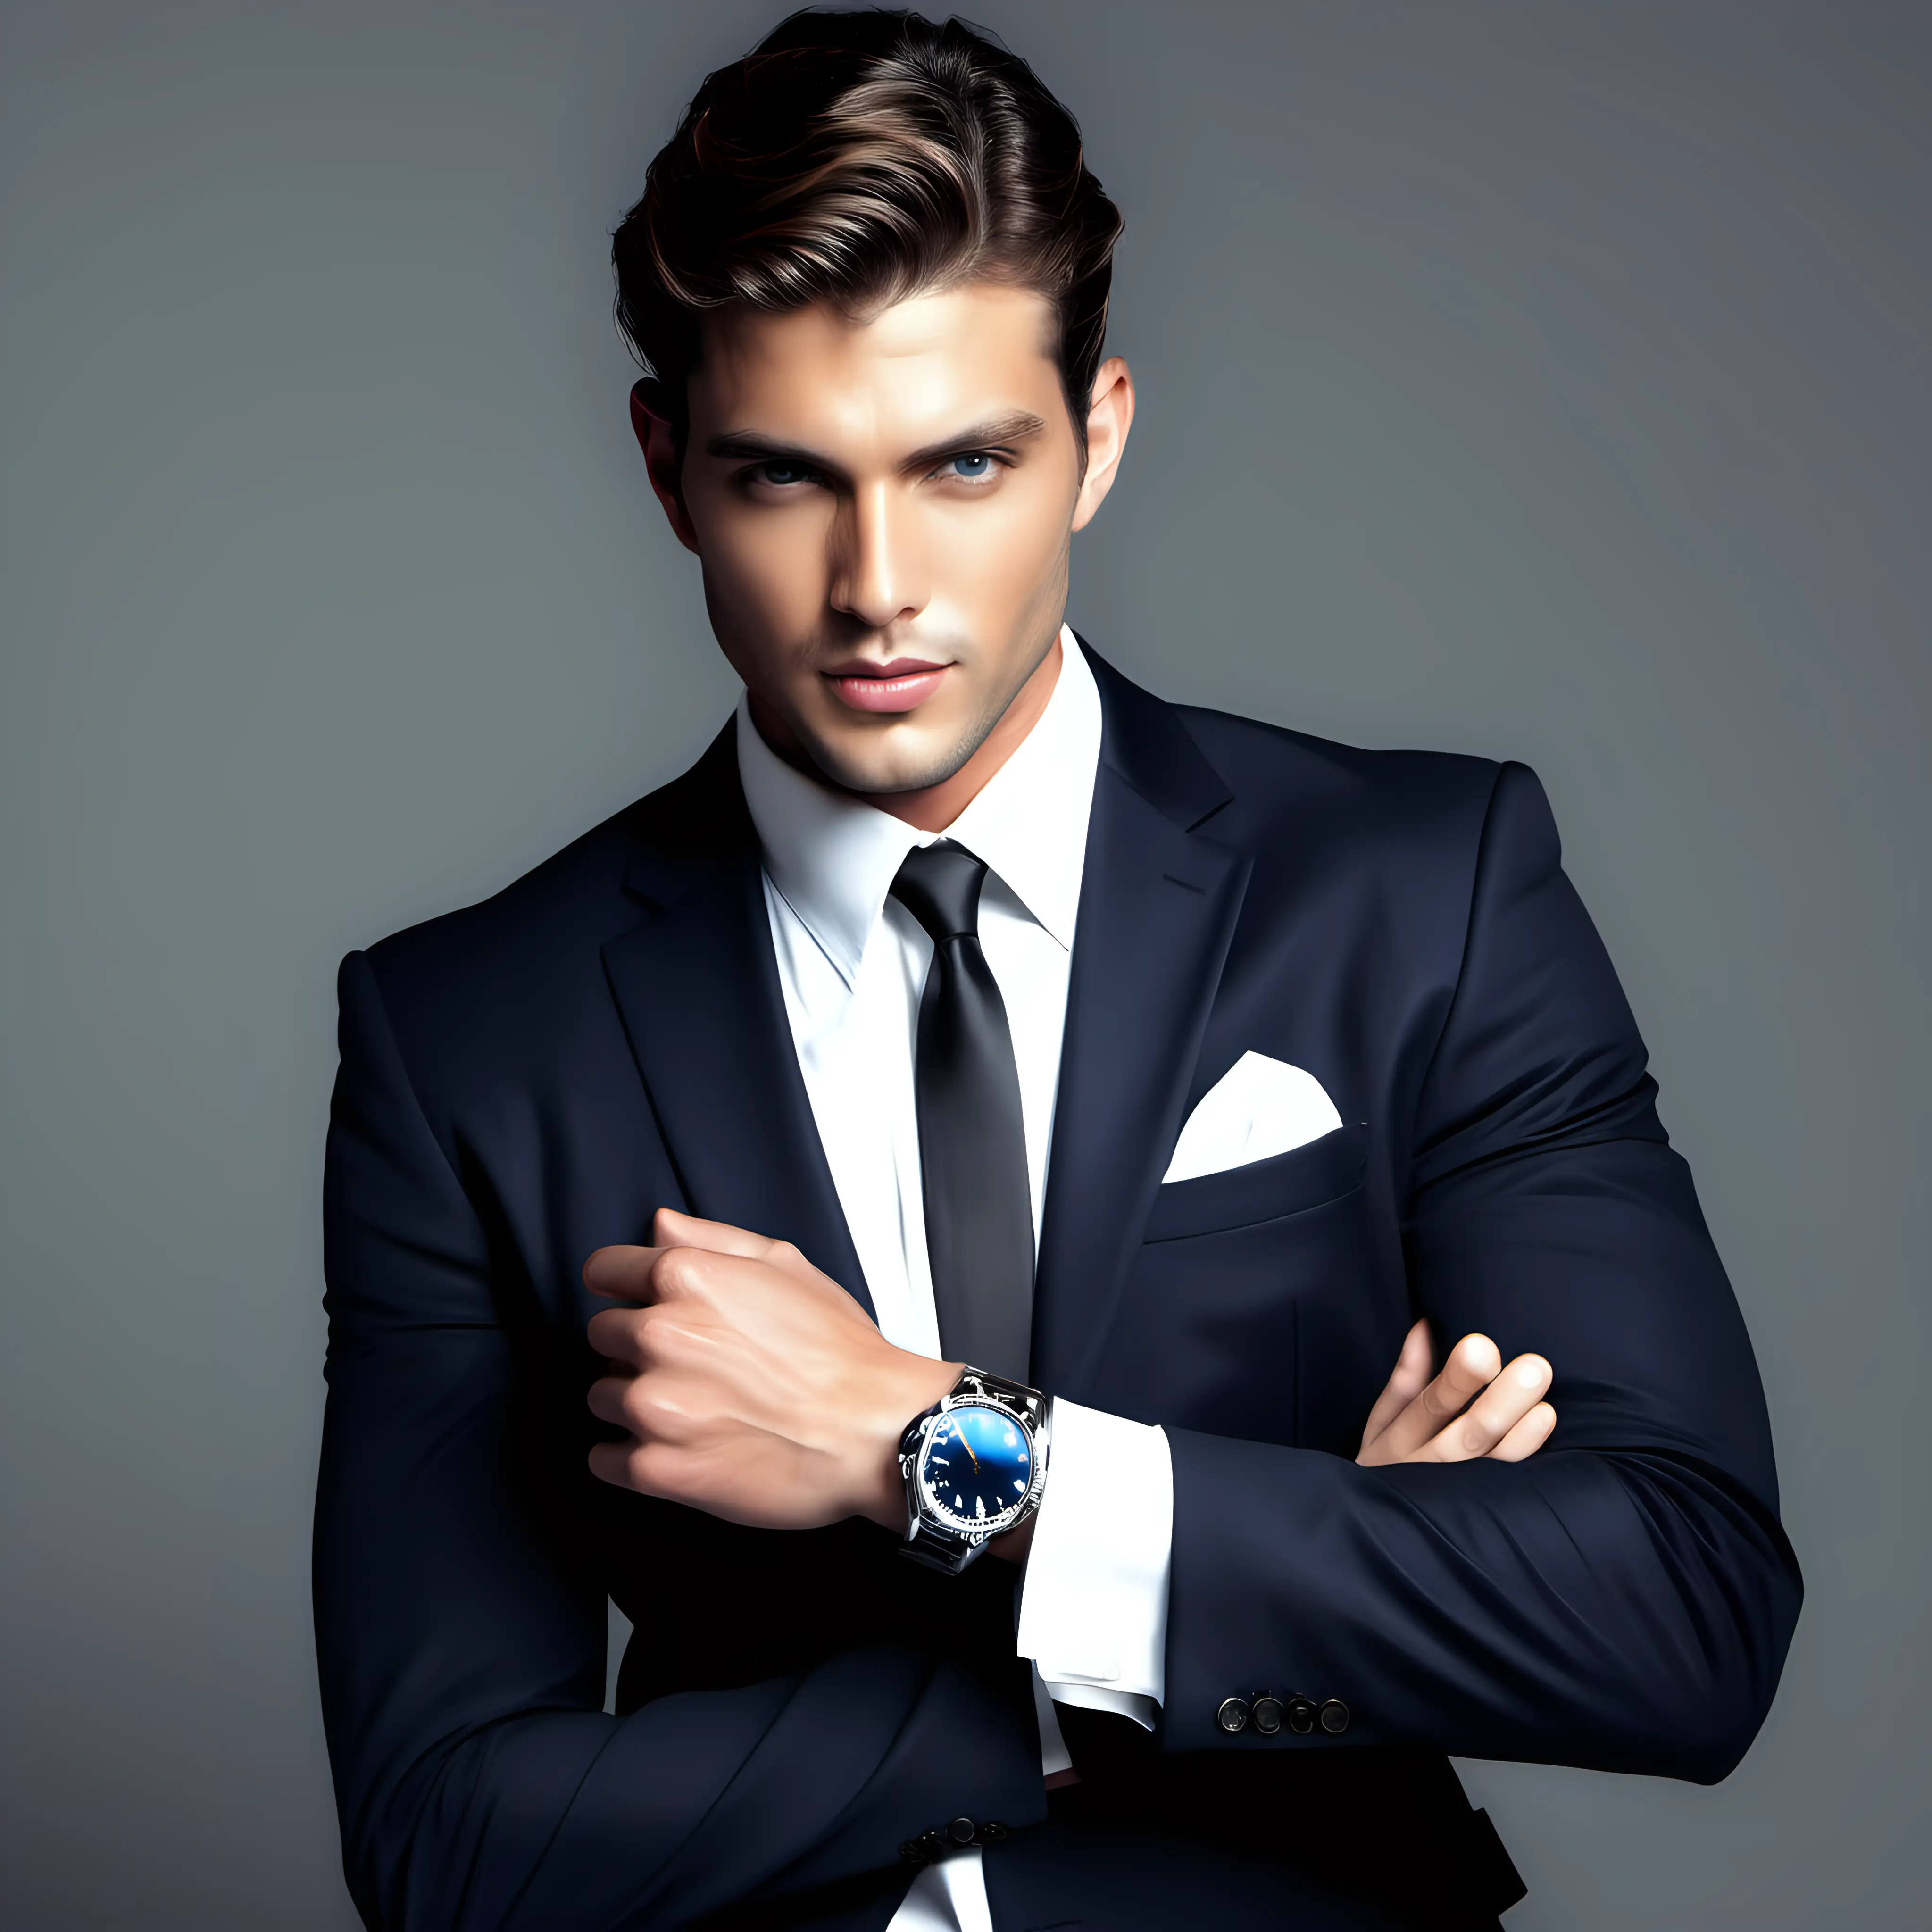 Stylish Businessman Wearing Watch